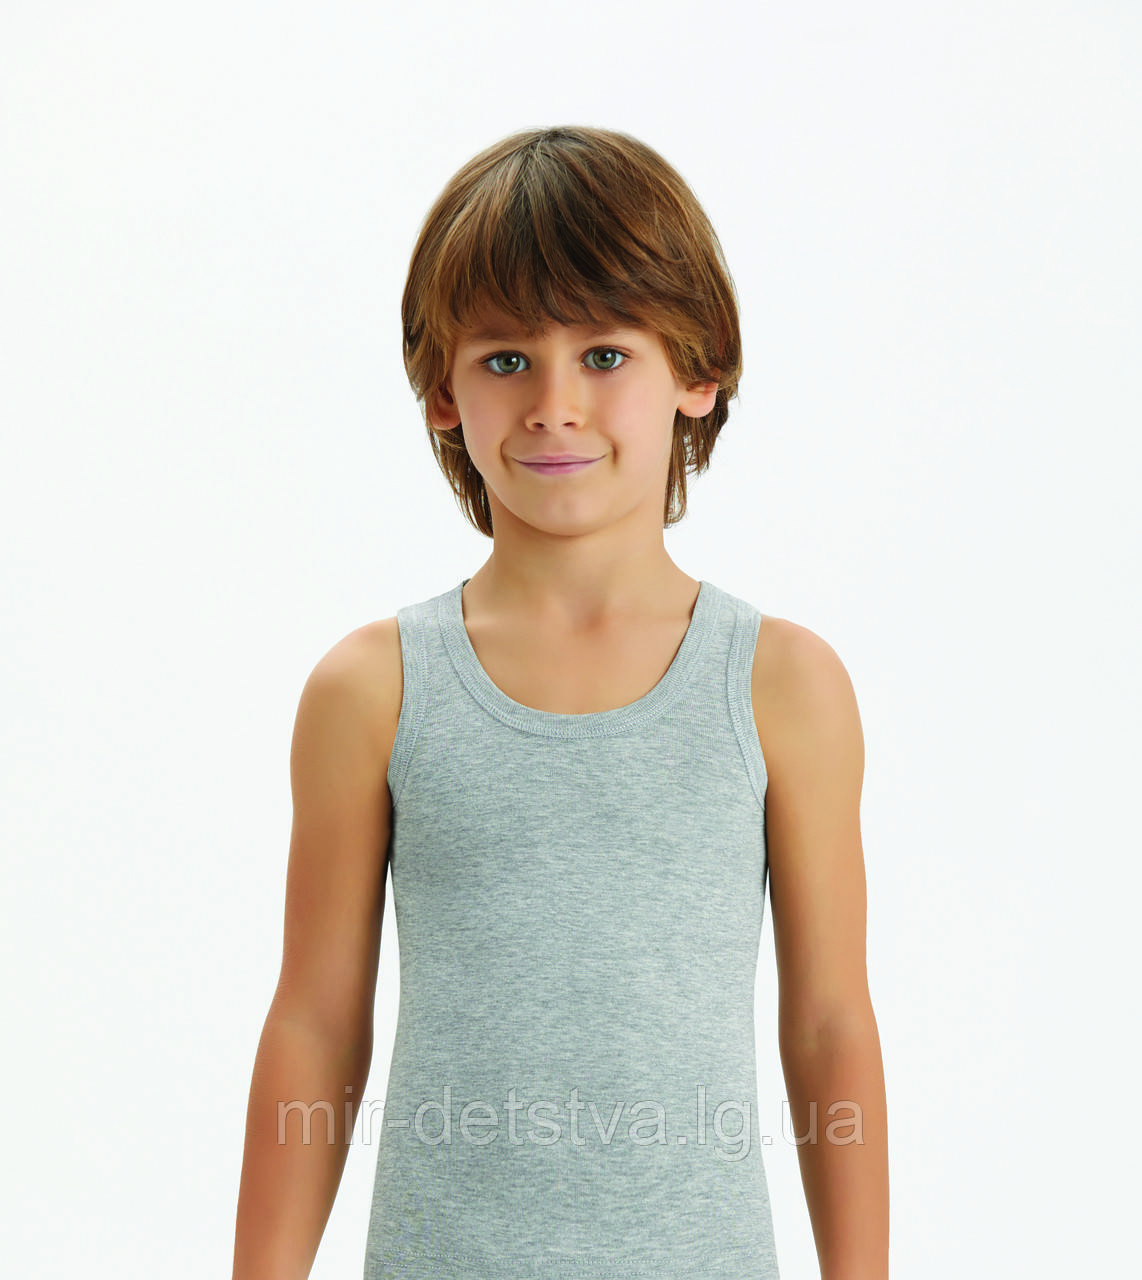 Дитяча білизна для хлопчиків з Туреччини оптом. Сіра майка для хлопчика ТМ Baykar р.5 (146-152 см)